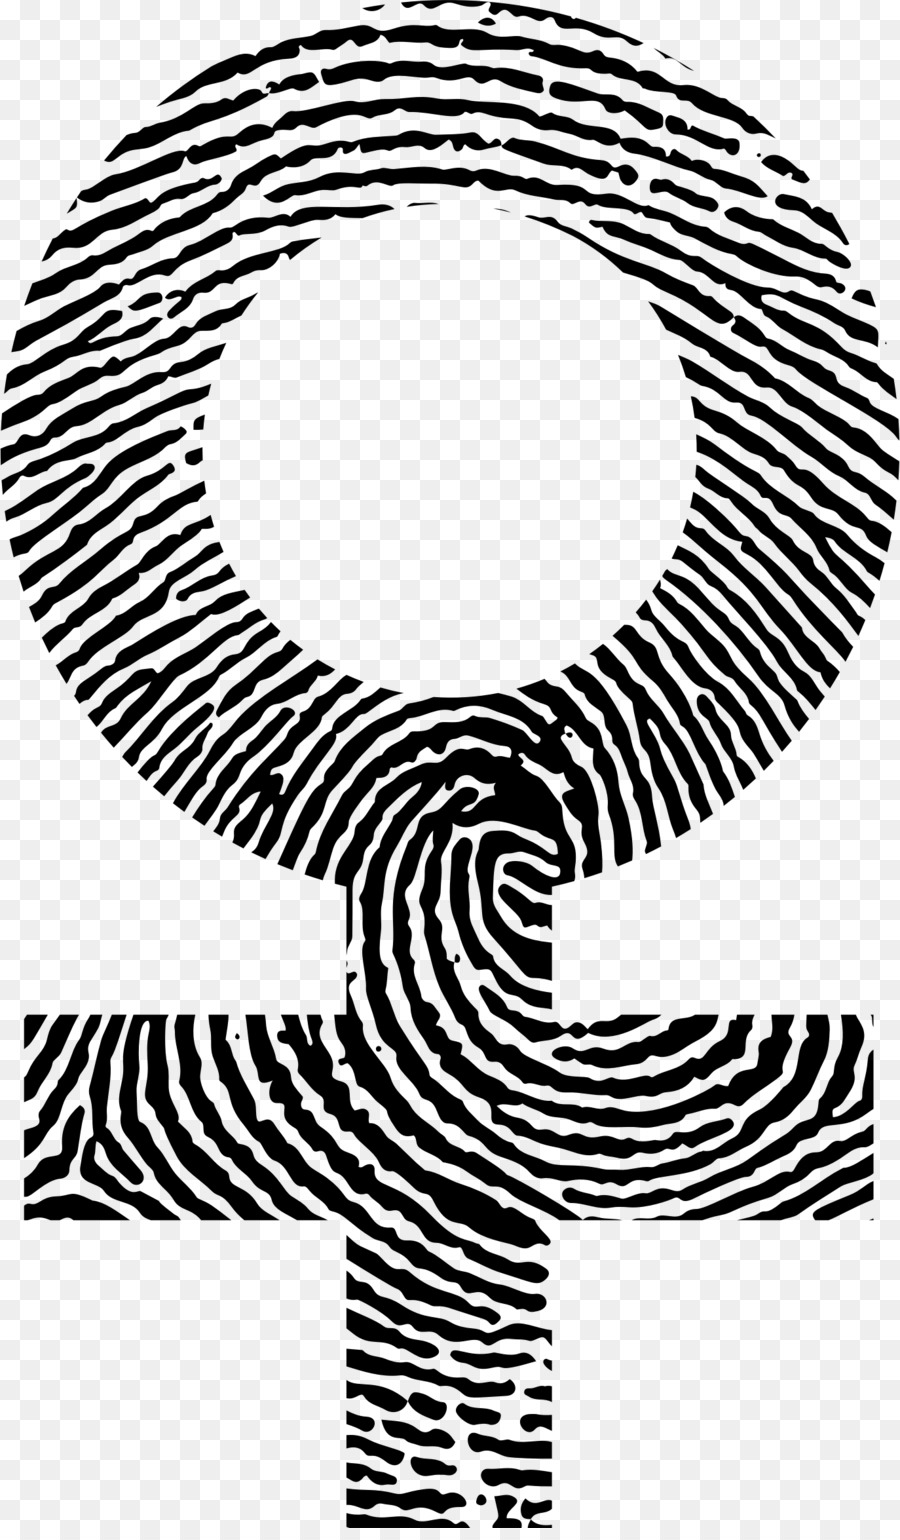 Di impronte digitali, Clip art - dito di stampa